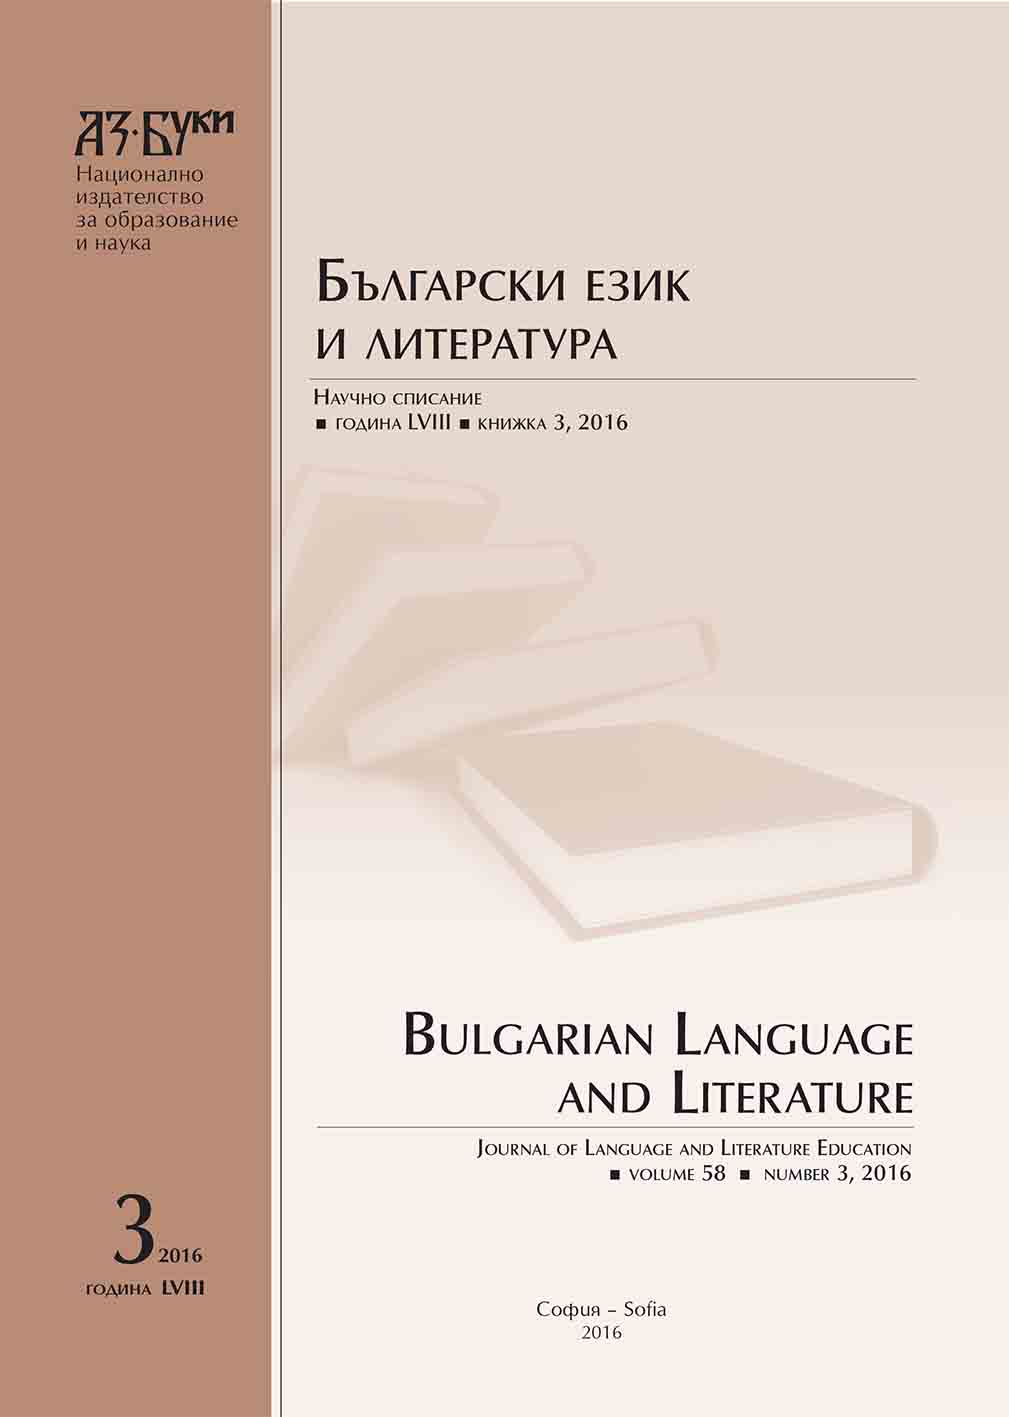 Българският език в исторически граници – разпространение през вековете и обучение в настоящето